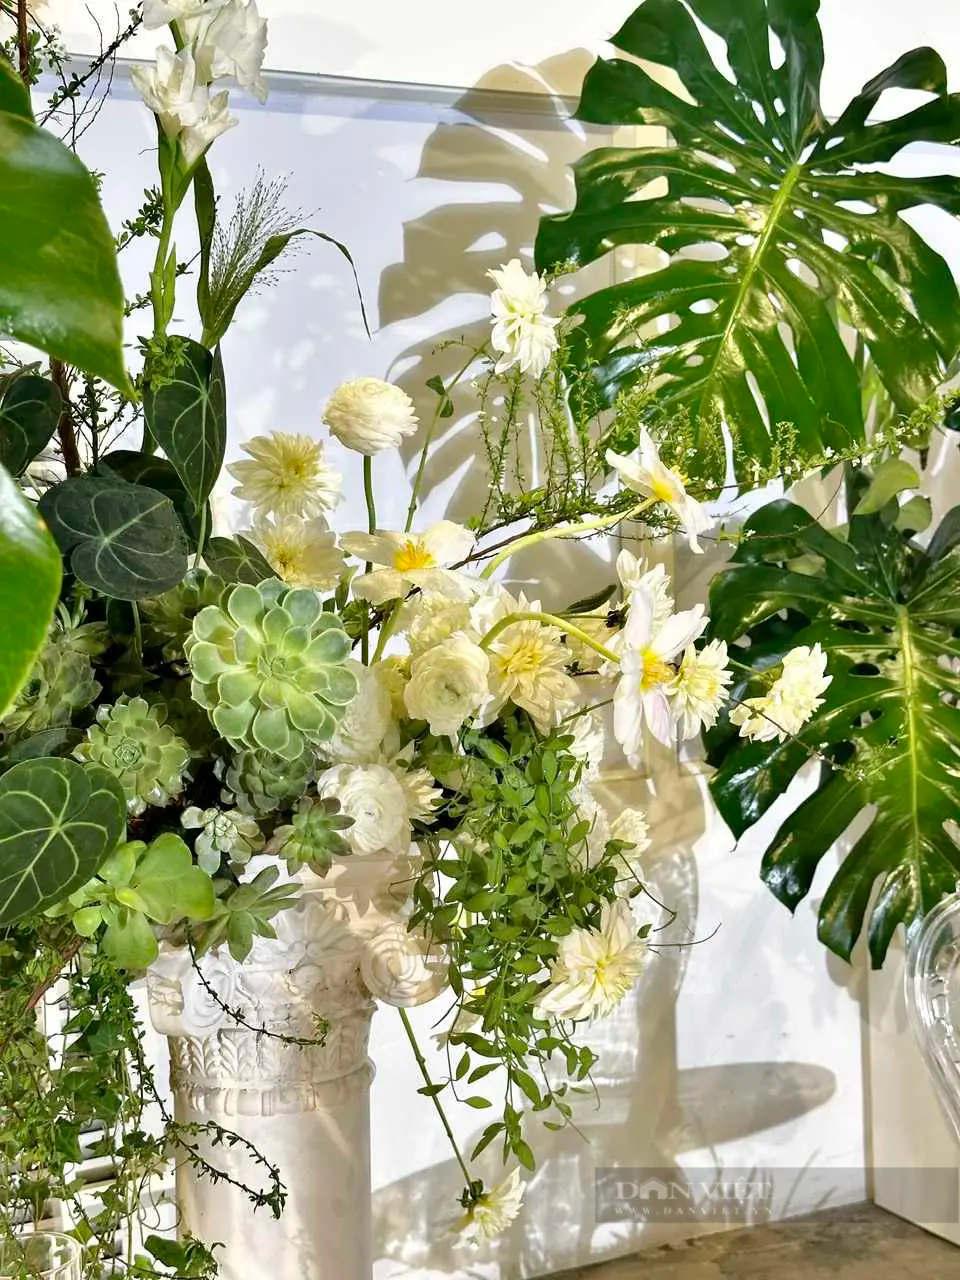 Ấn tượng triển lãm hoa tươi lần đầu tiên tại Hà Nội với phong cách Garden - Ảnh 4.